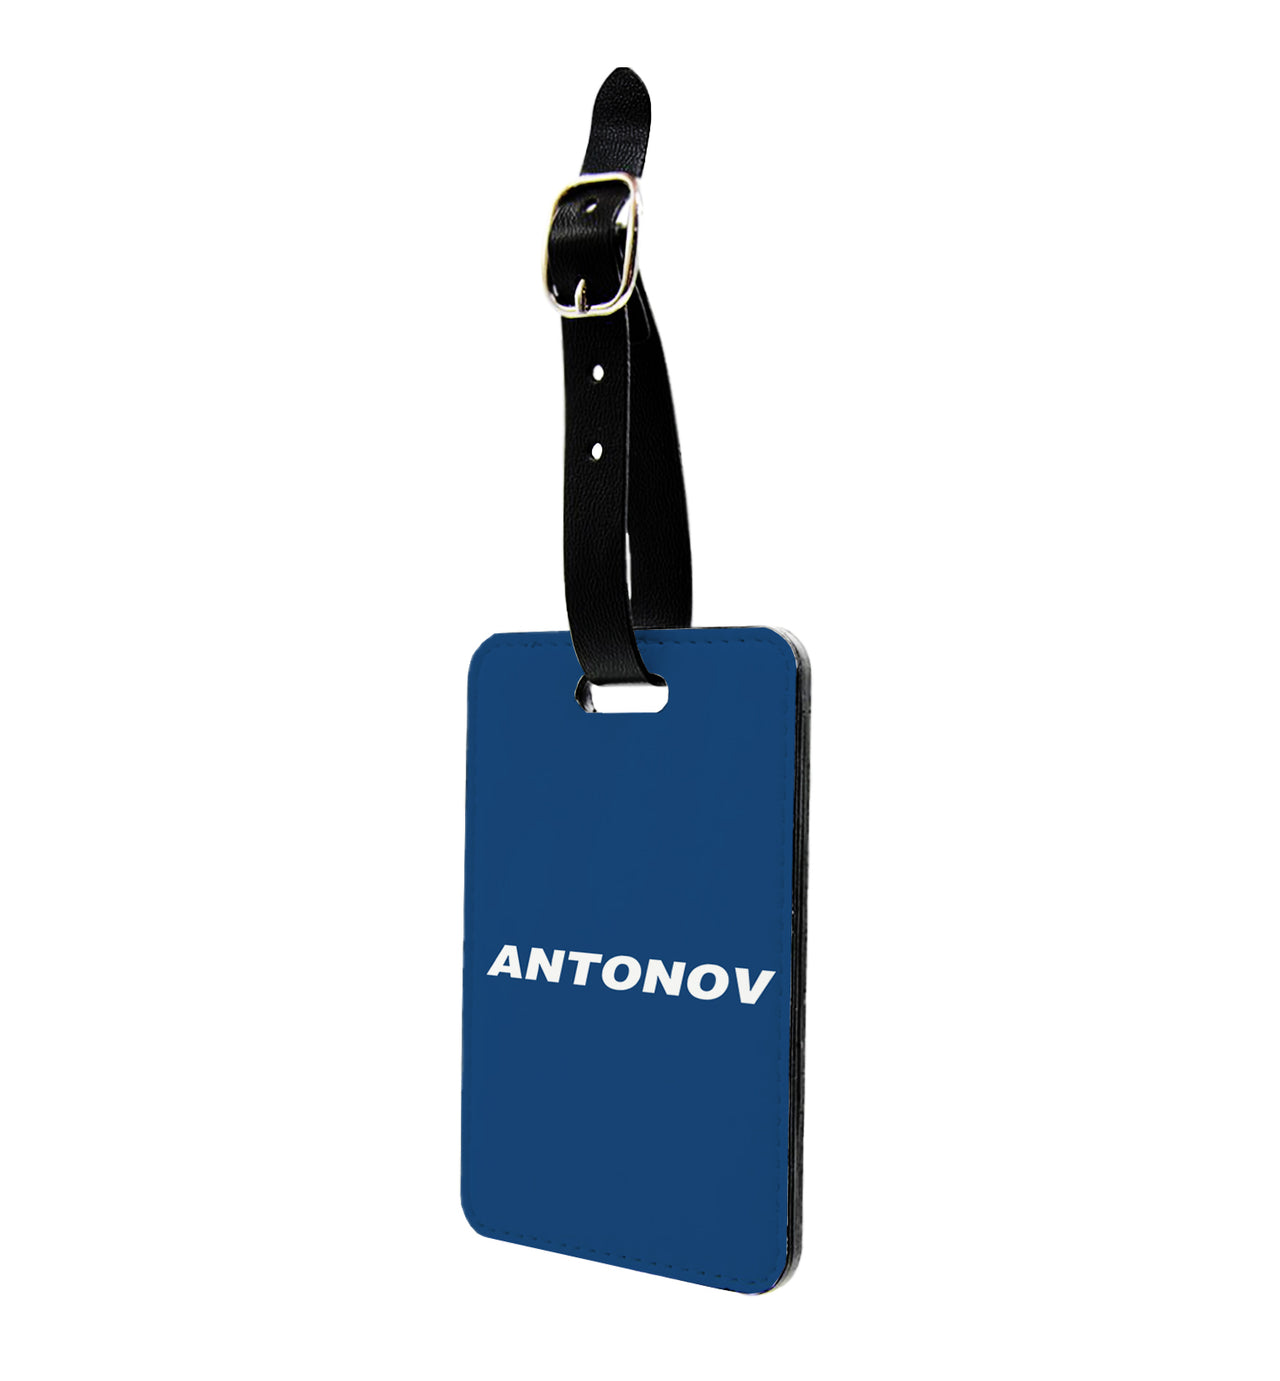 Antonov & Text Designed Luggage Tag